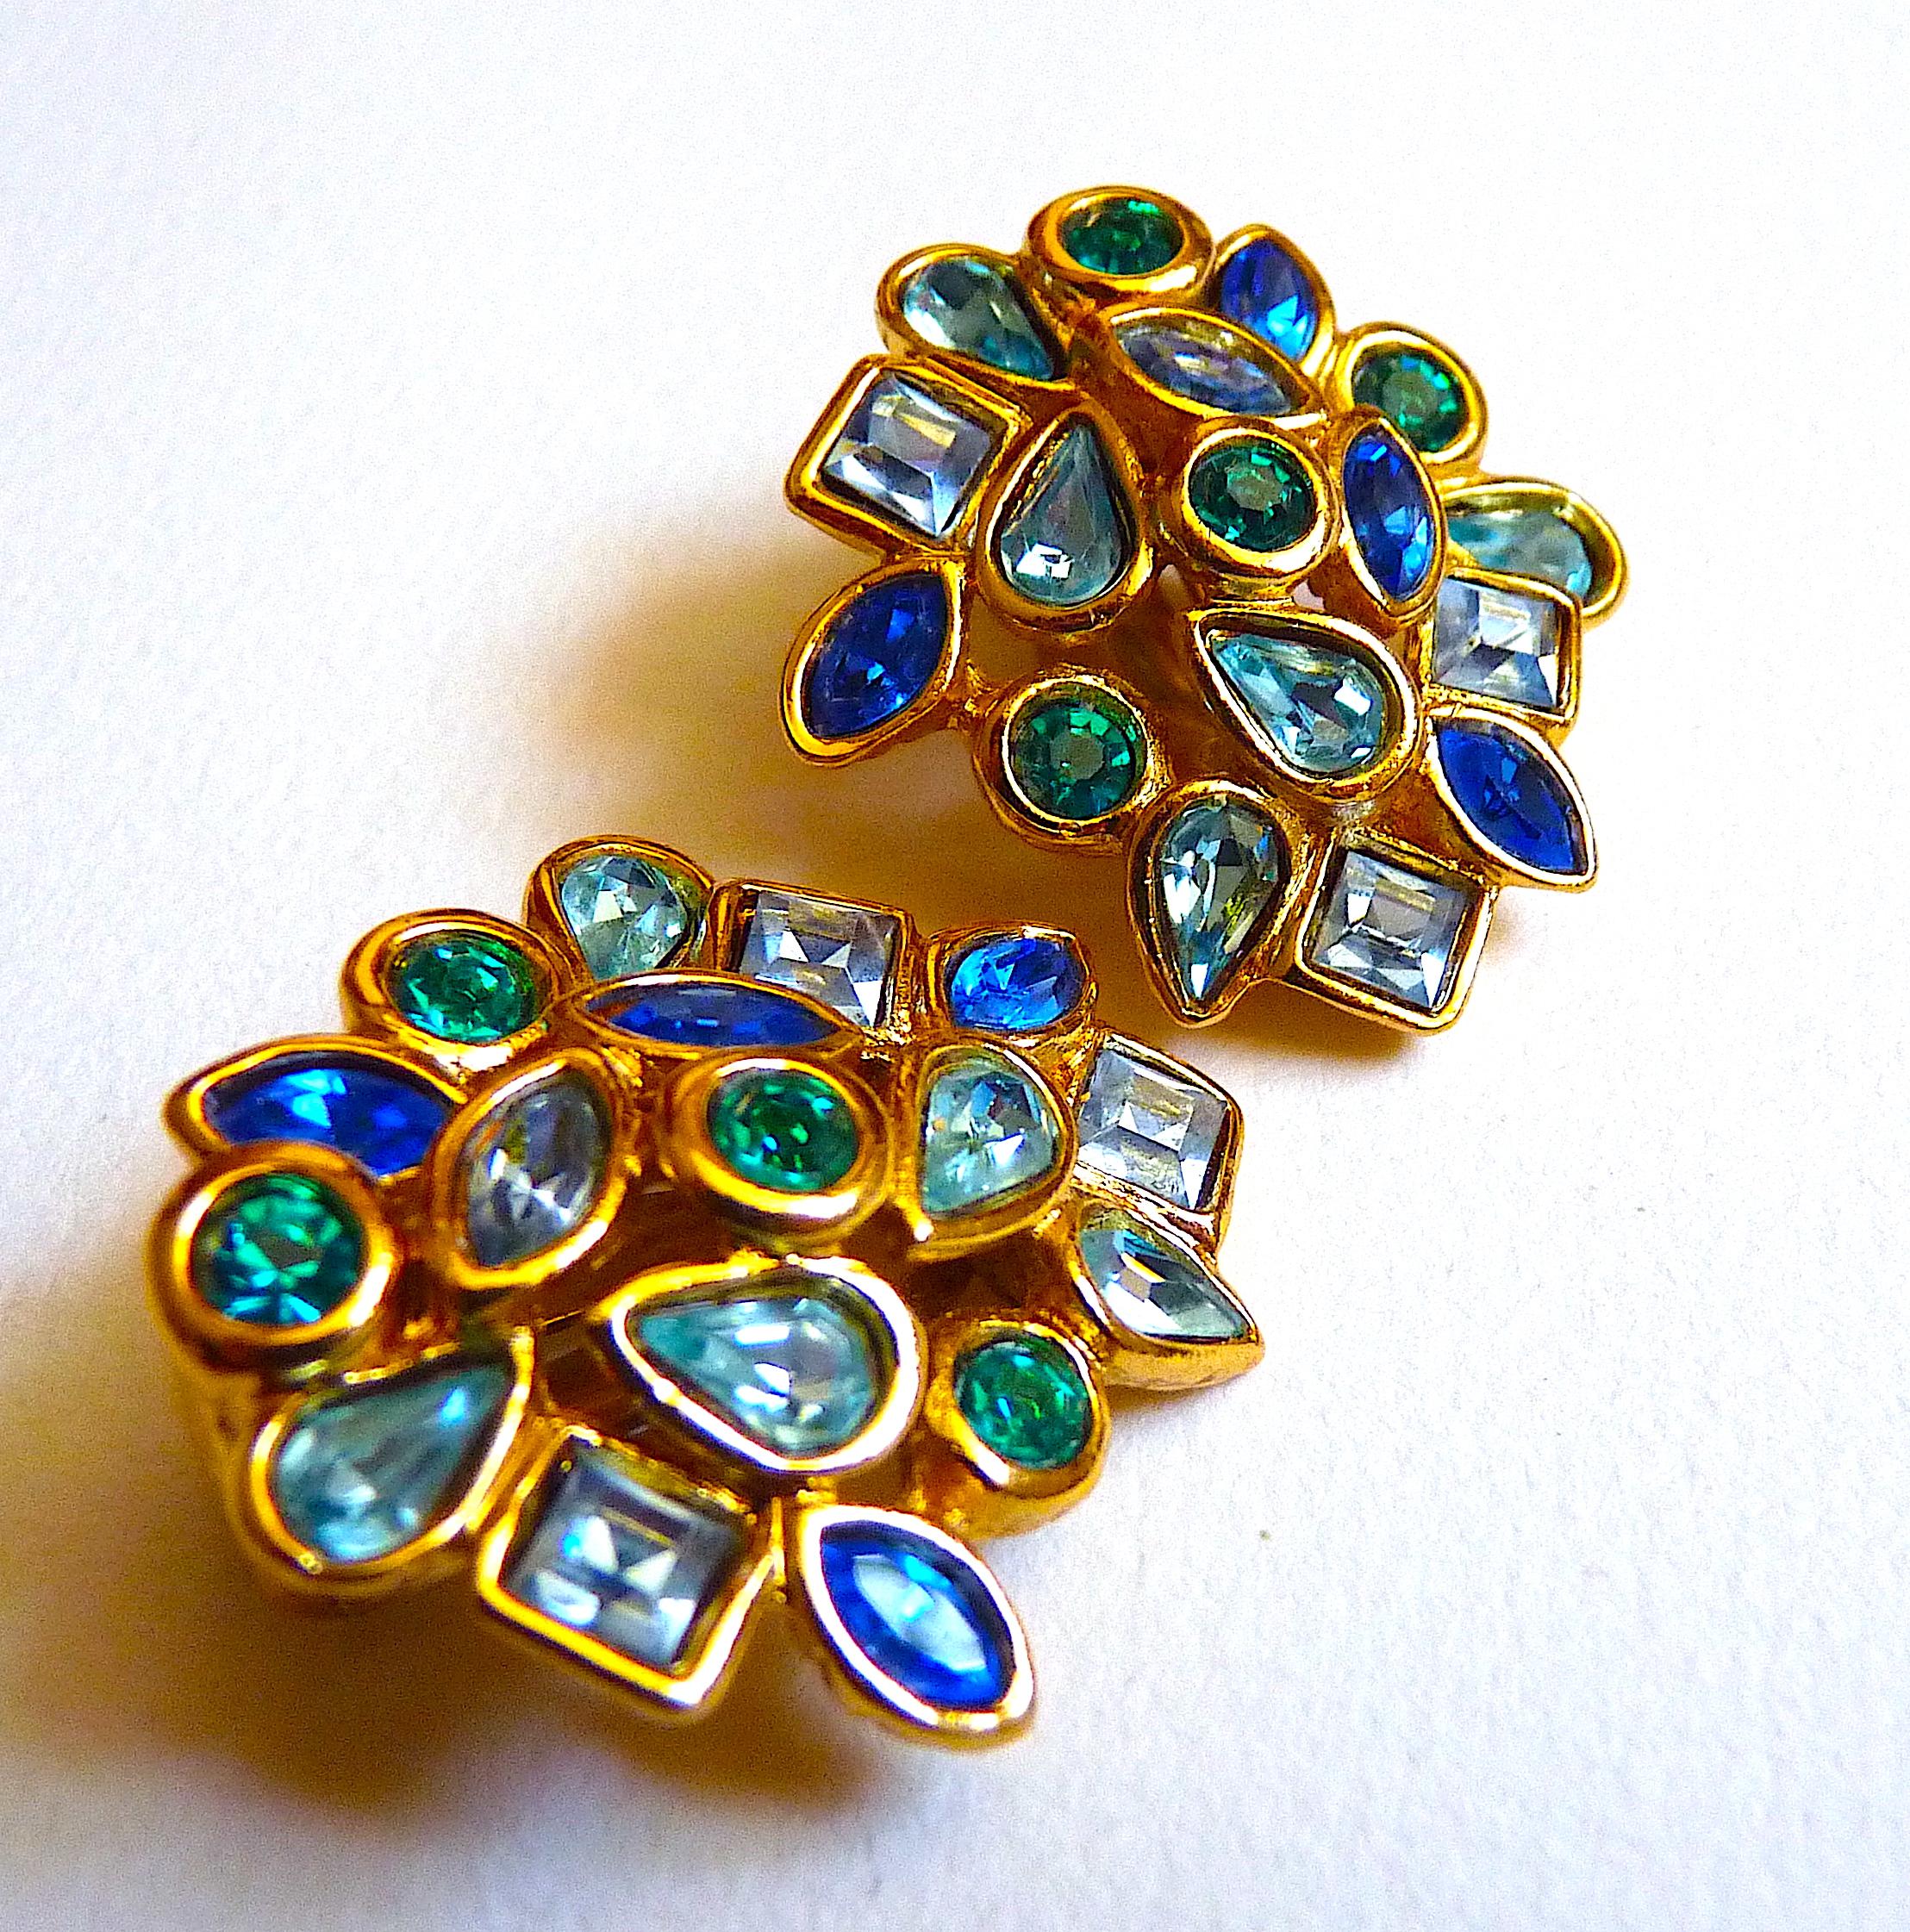 YVES SAINT LAURENT Ohrringe mit Clip, wunderschöne blaue und grüne Swarovski-Kristalle in einem durchbrochenen goldfarbenen Metall

- Goldfarbenes Metall und blaue, grüne Swarovski Kristall Cabochons

- Signiert YSL Made in France auf der